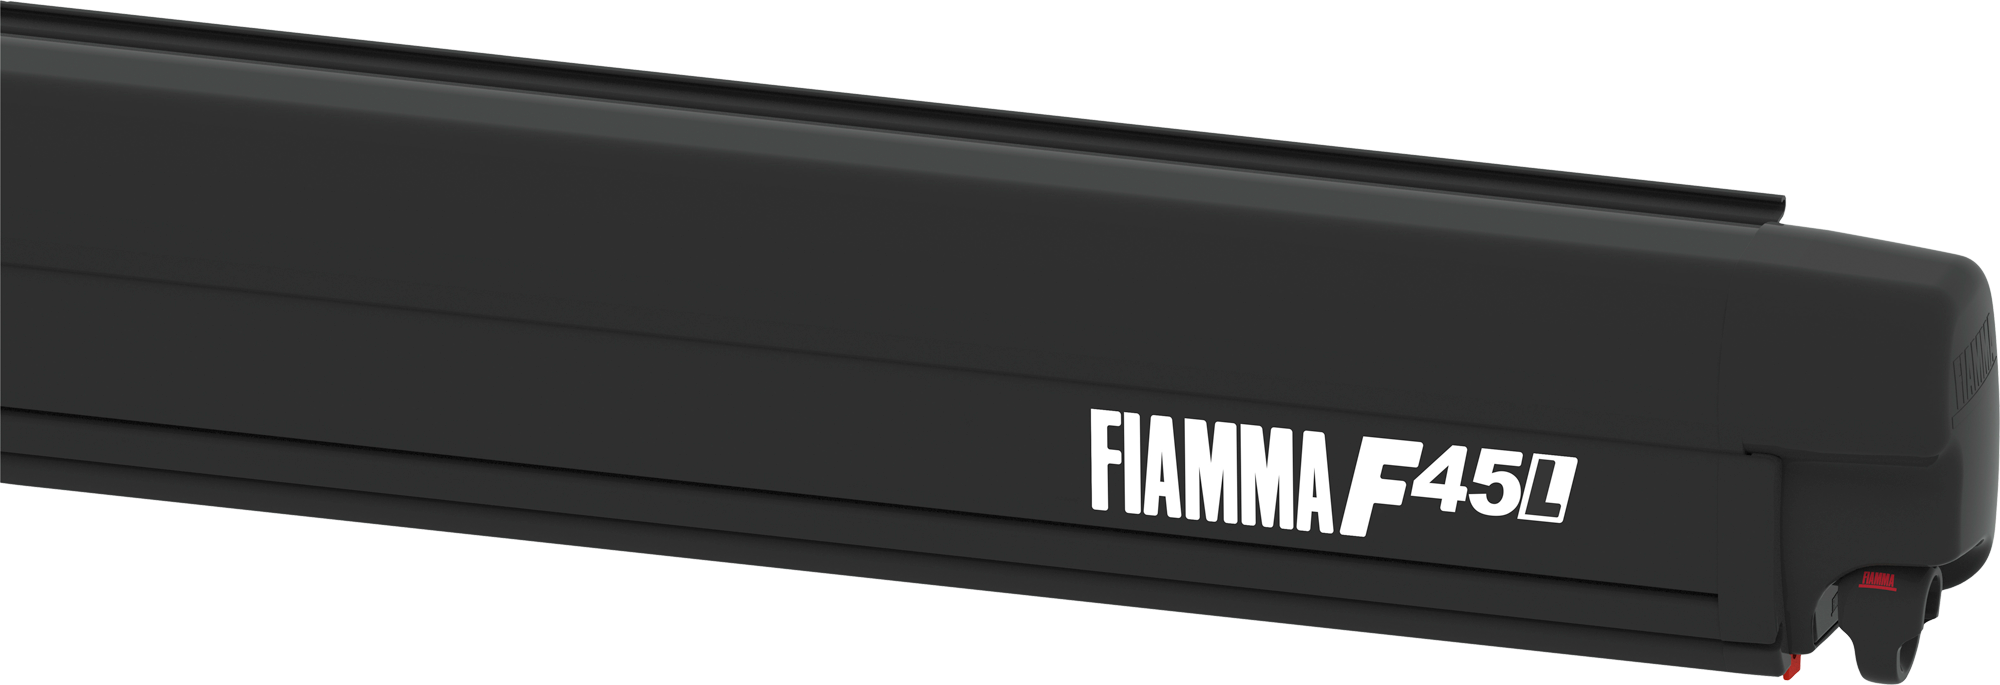 Fiamma F45L 550 Markise Gehäusefarbe Deep Black Tuchfarbe Royal Grey 550 cm